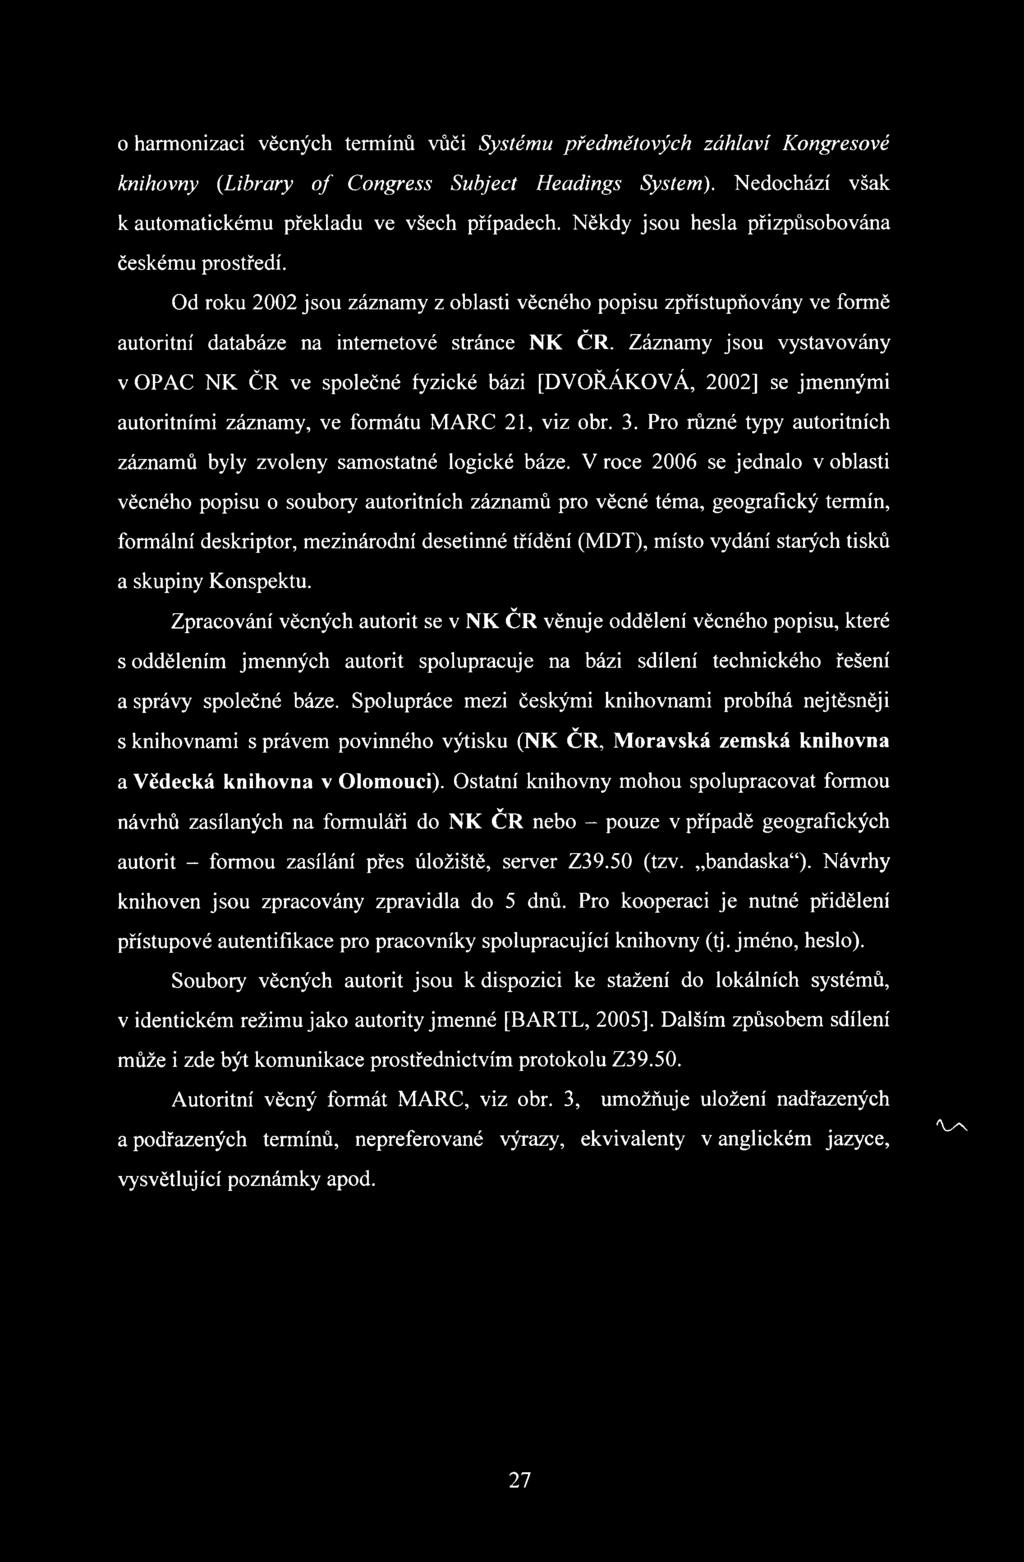 Záznamy jsou vystavovány v OPAC NK ČR ve společné fyzické bázi [DVOŘÁKOVÁ, 2002] se jmennými autoritními záznamy, ve formátu MARC 21, viz obr. 3.